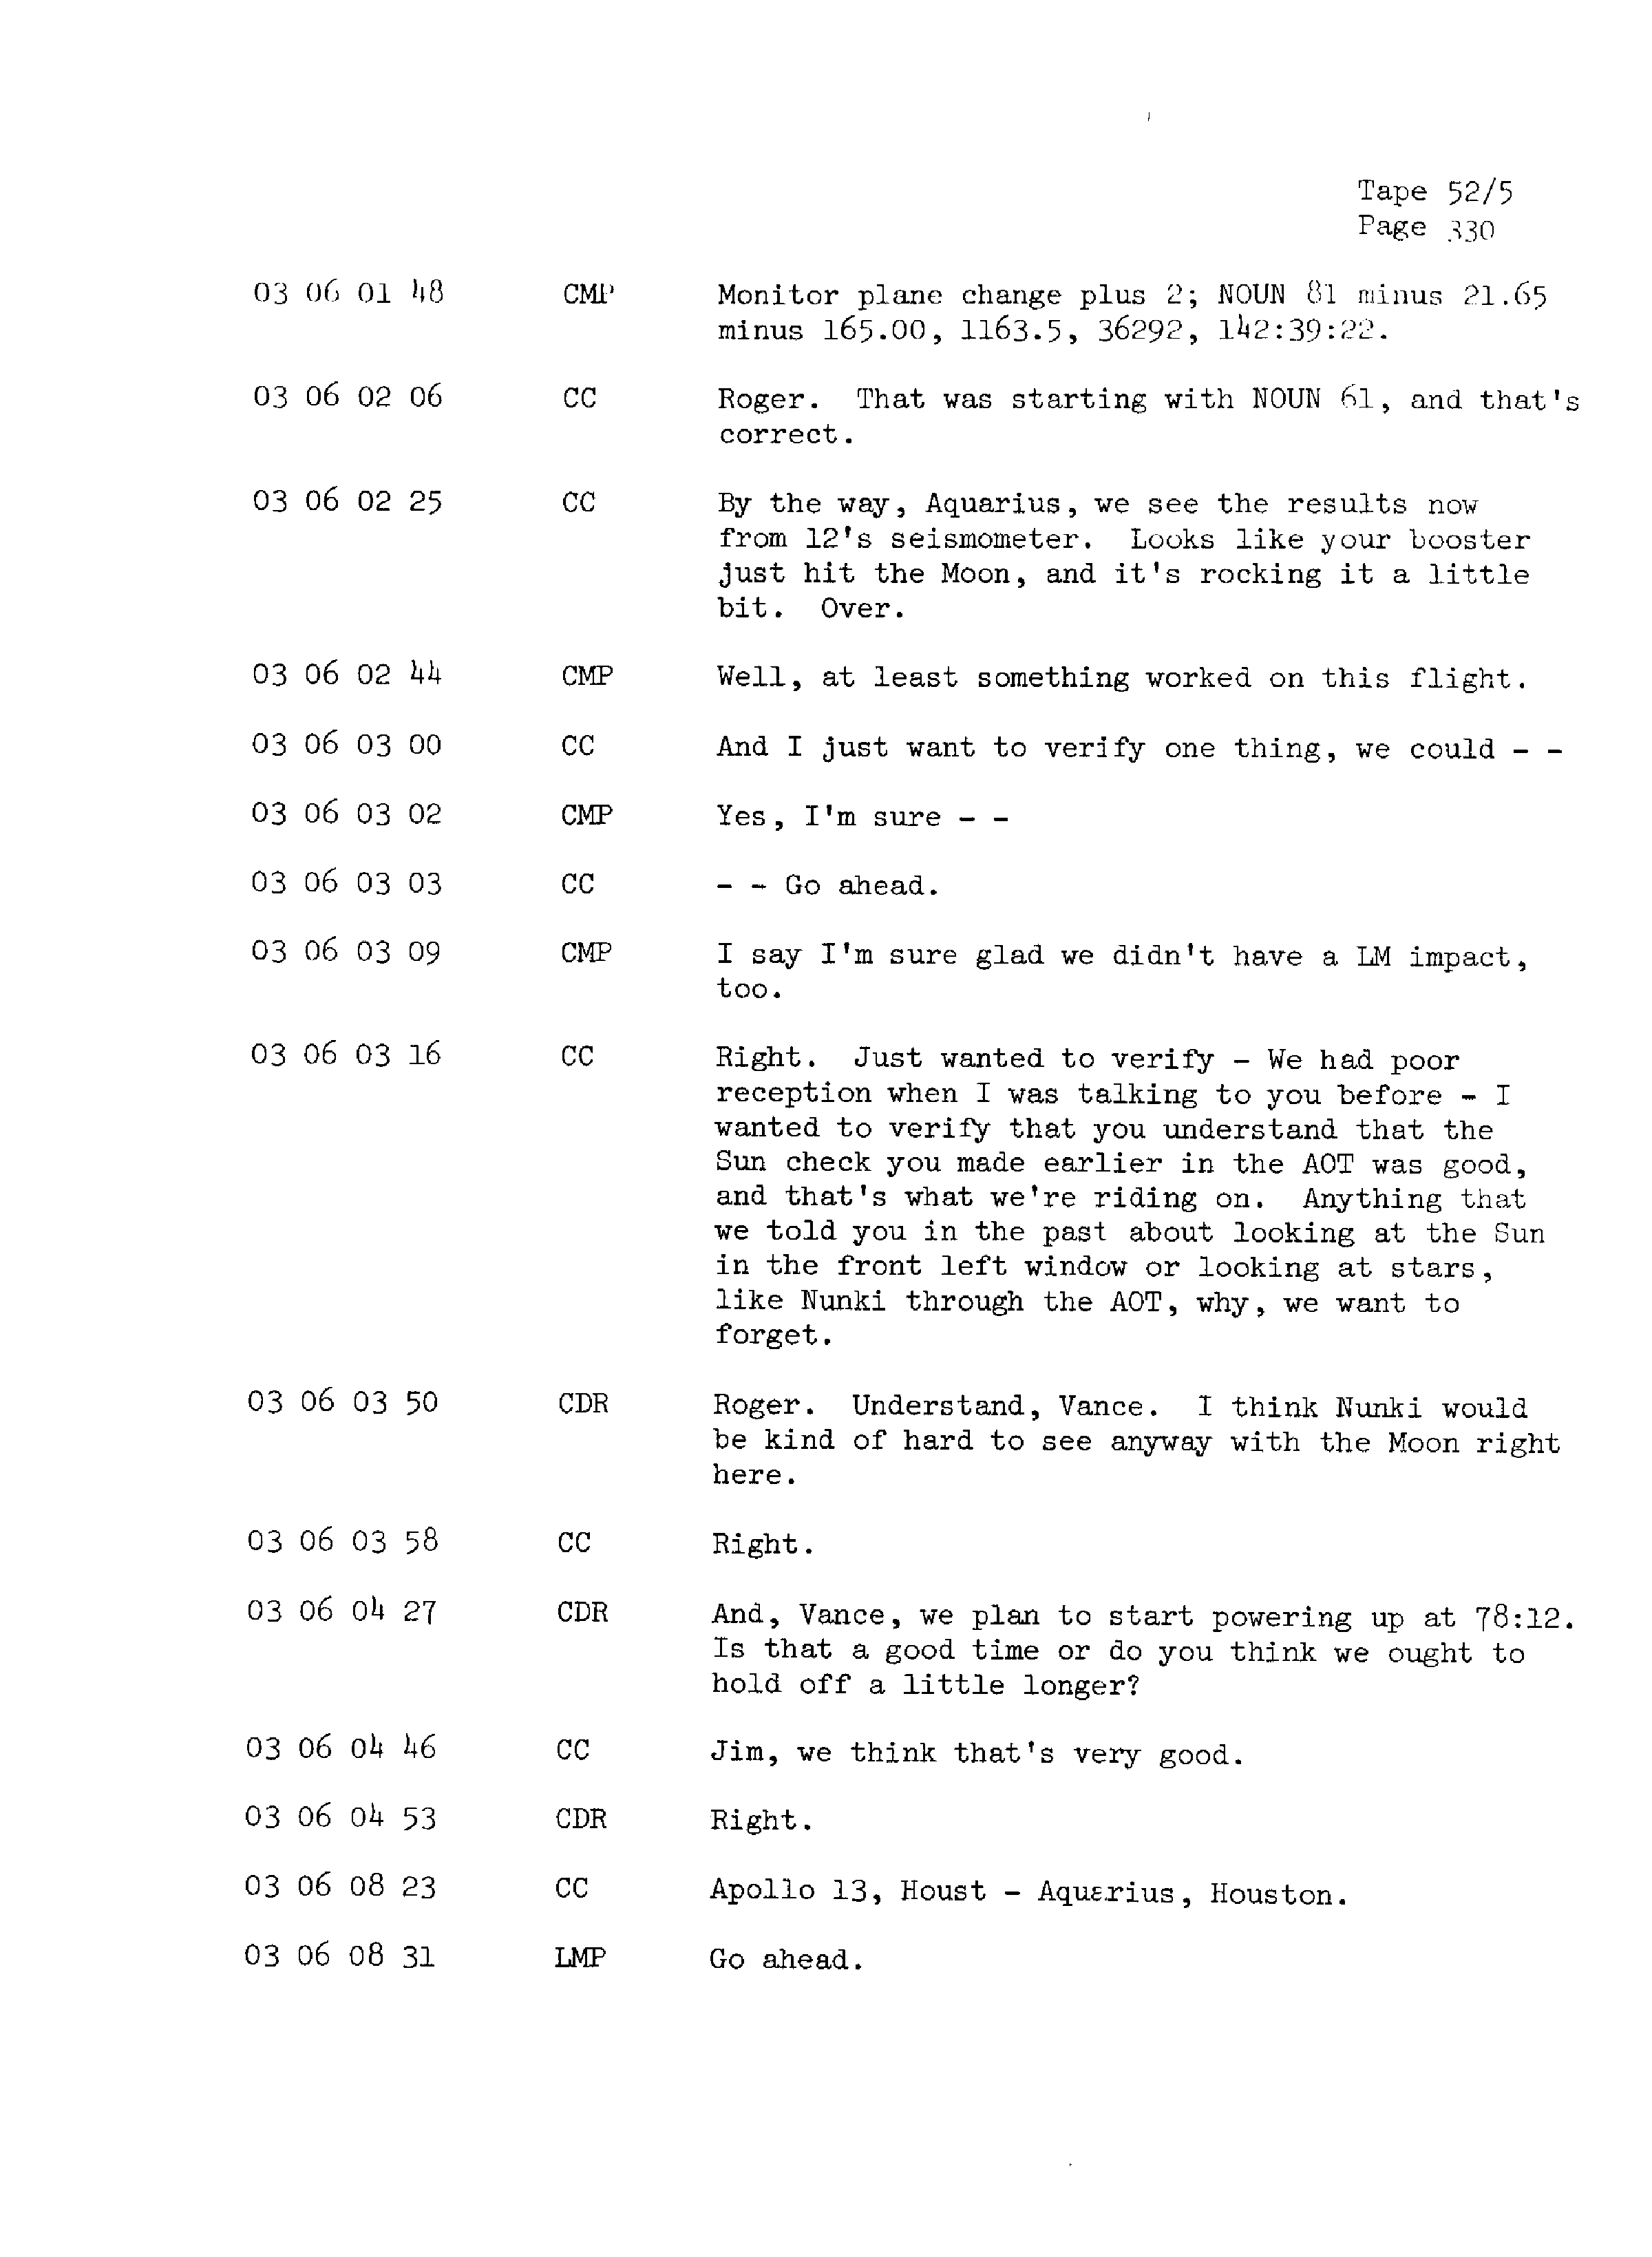 Page 337 of Apollo 13’s original transcript